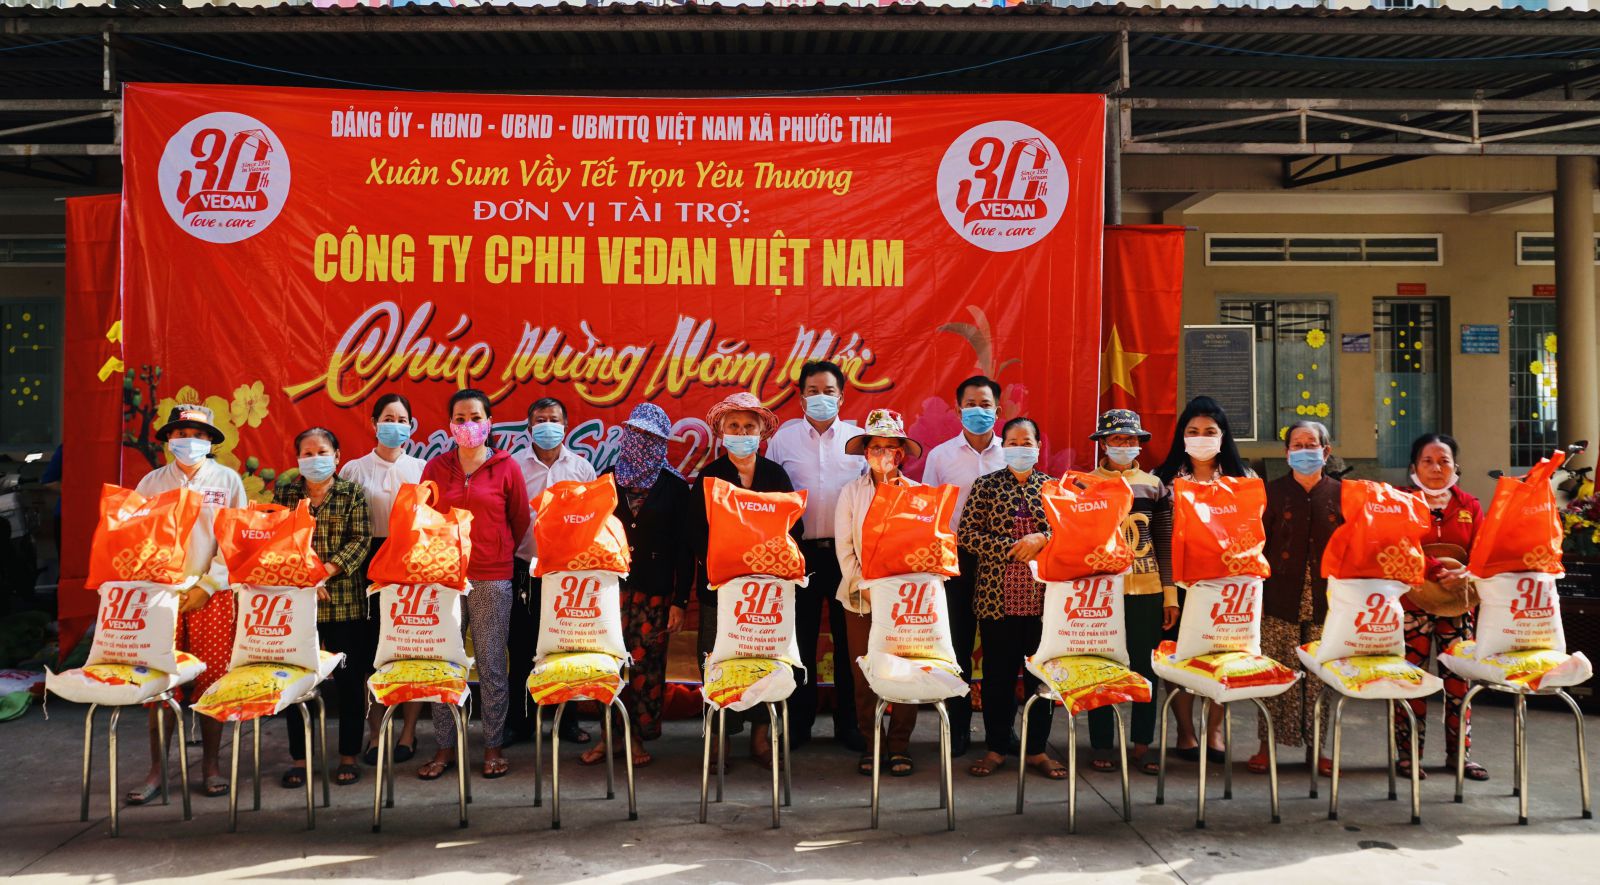 Đại diện công ty Vedan Việt nam ( áo trắng giữa ) cùng đại diện UBND xã Phước thái huyện Long thành tỉnh Đồng nai trao quà tết cho bà con tại địa phương.